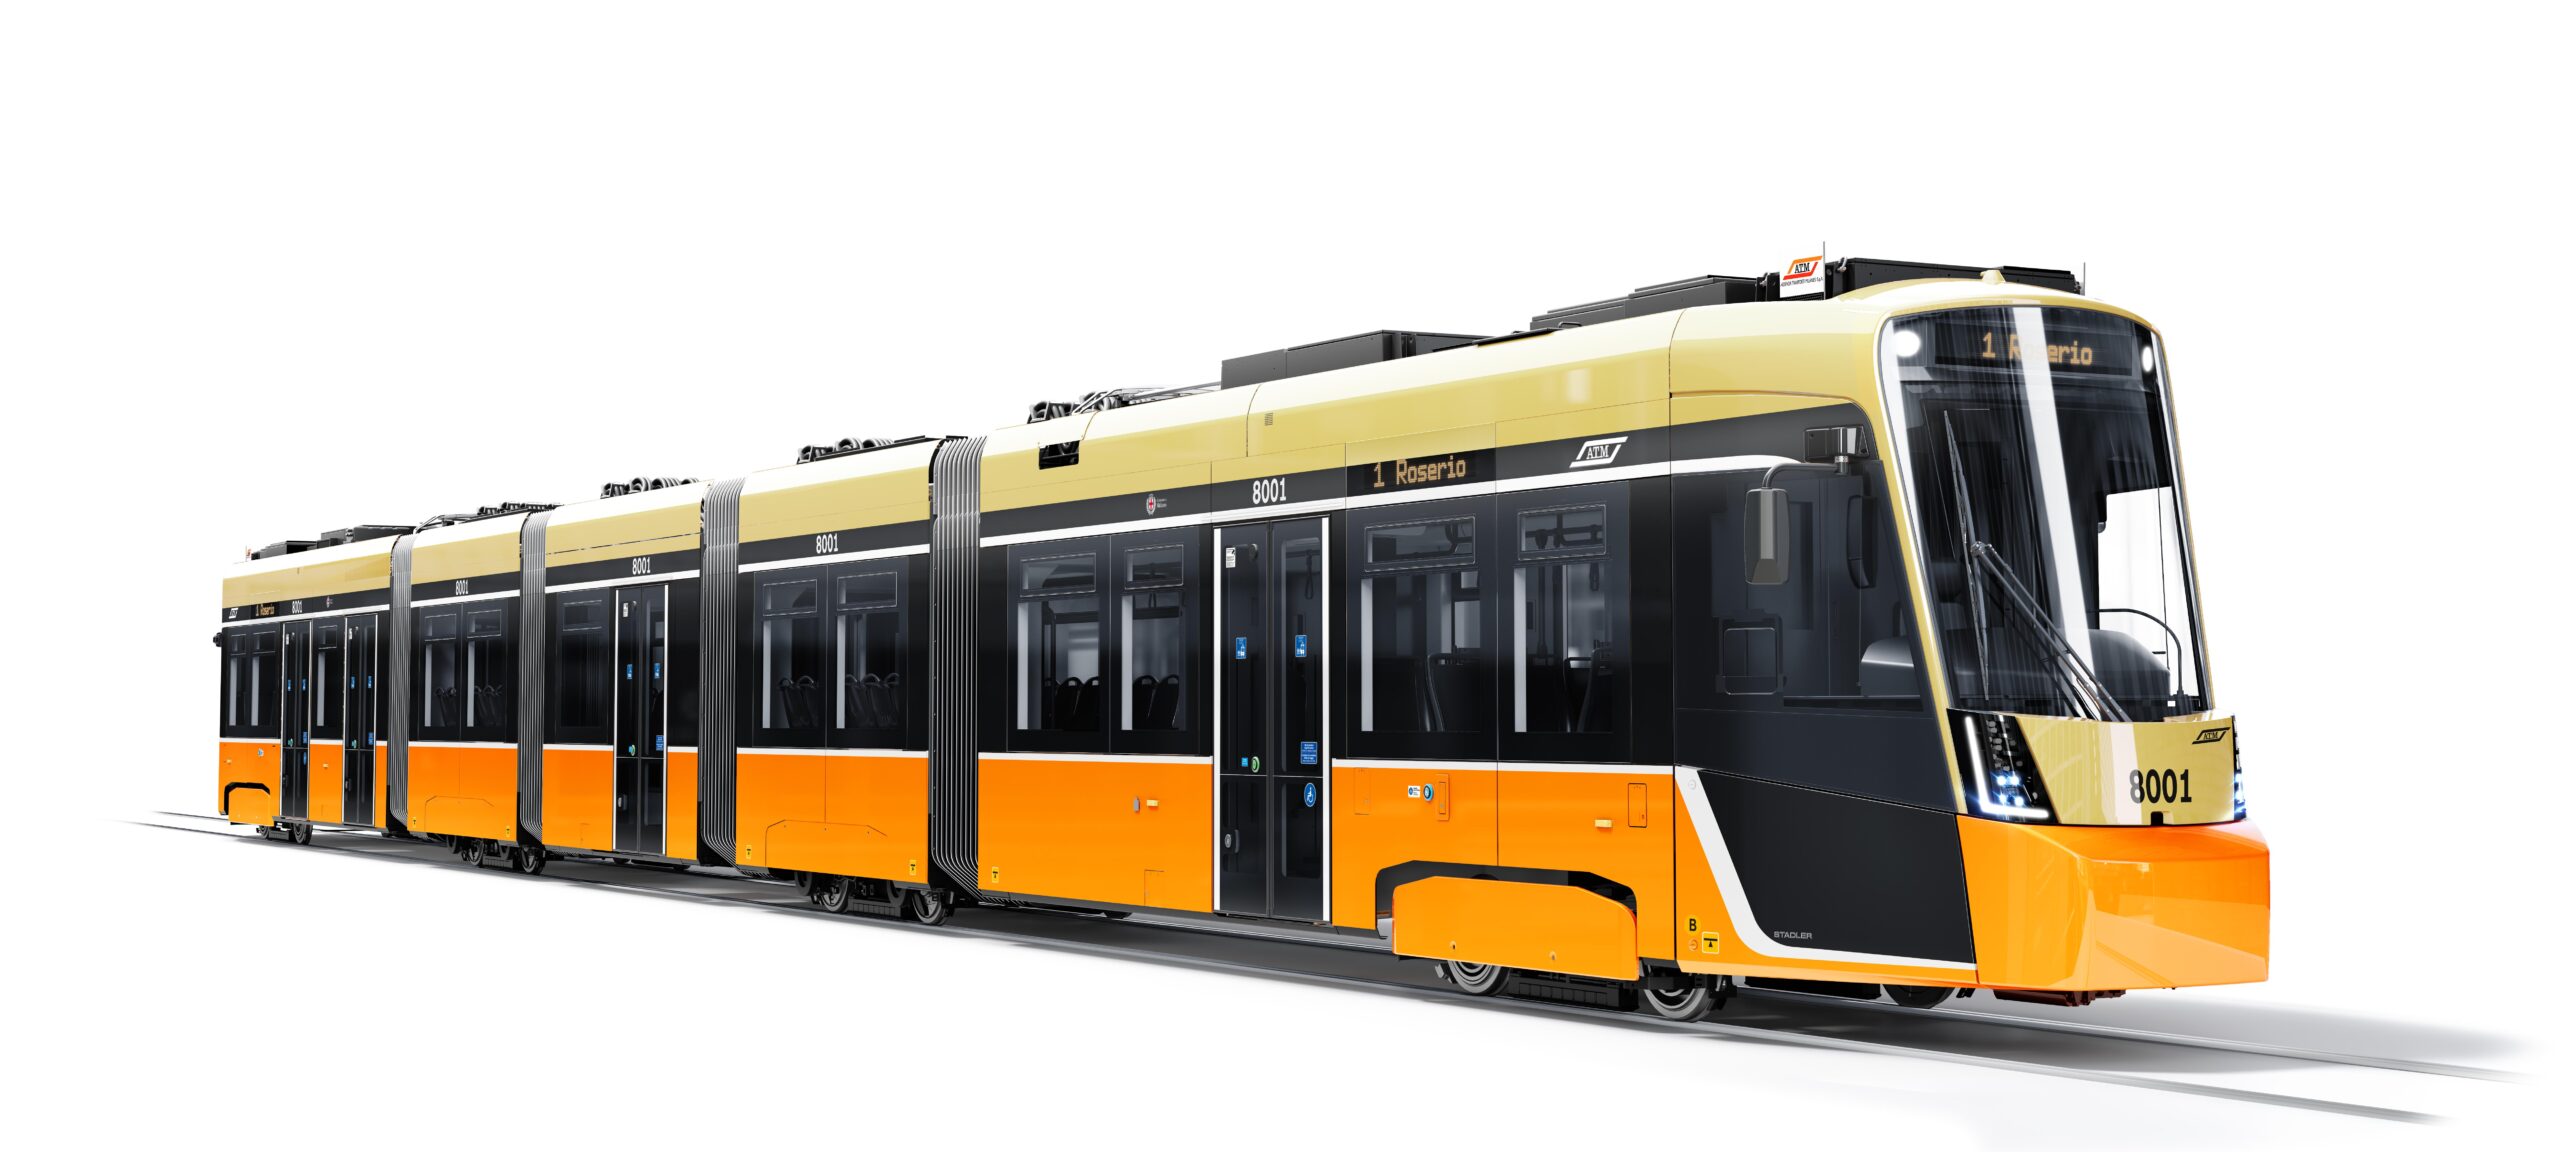 Stadler's new TRAMLINK trams for Milan